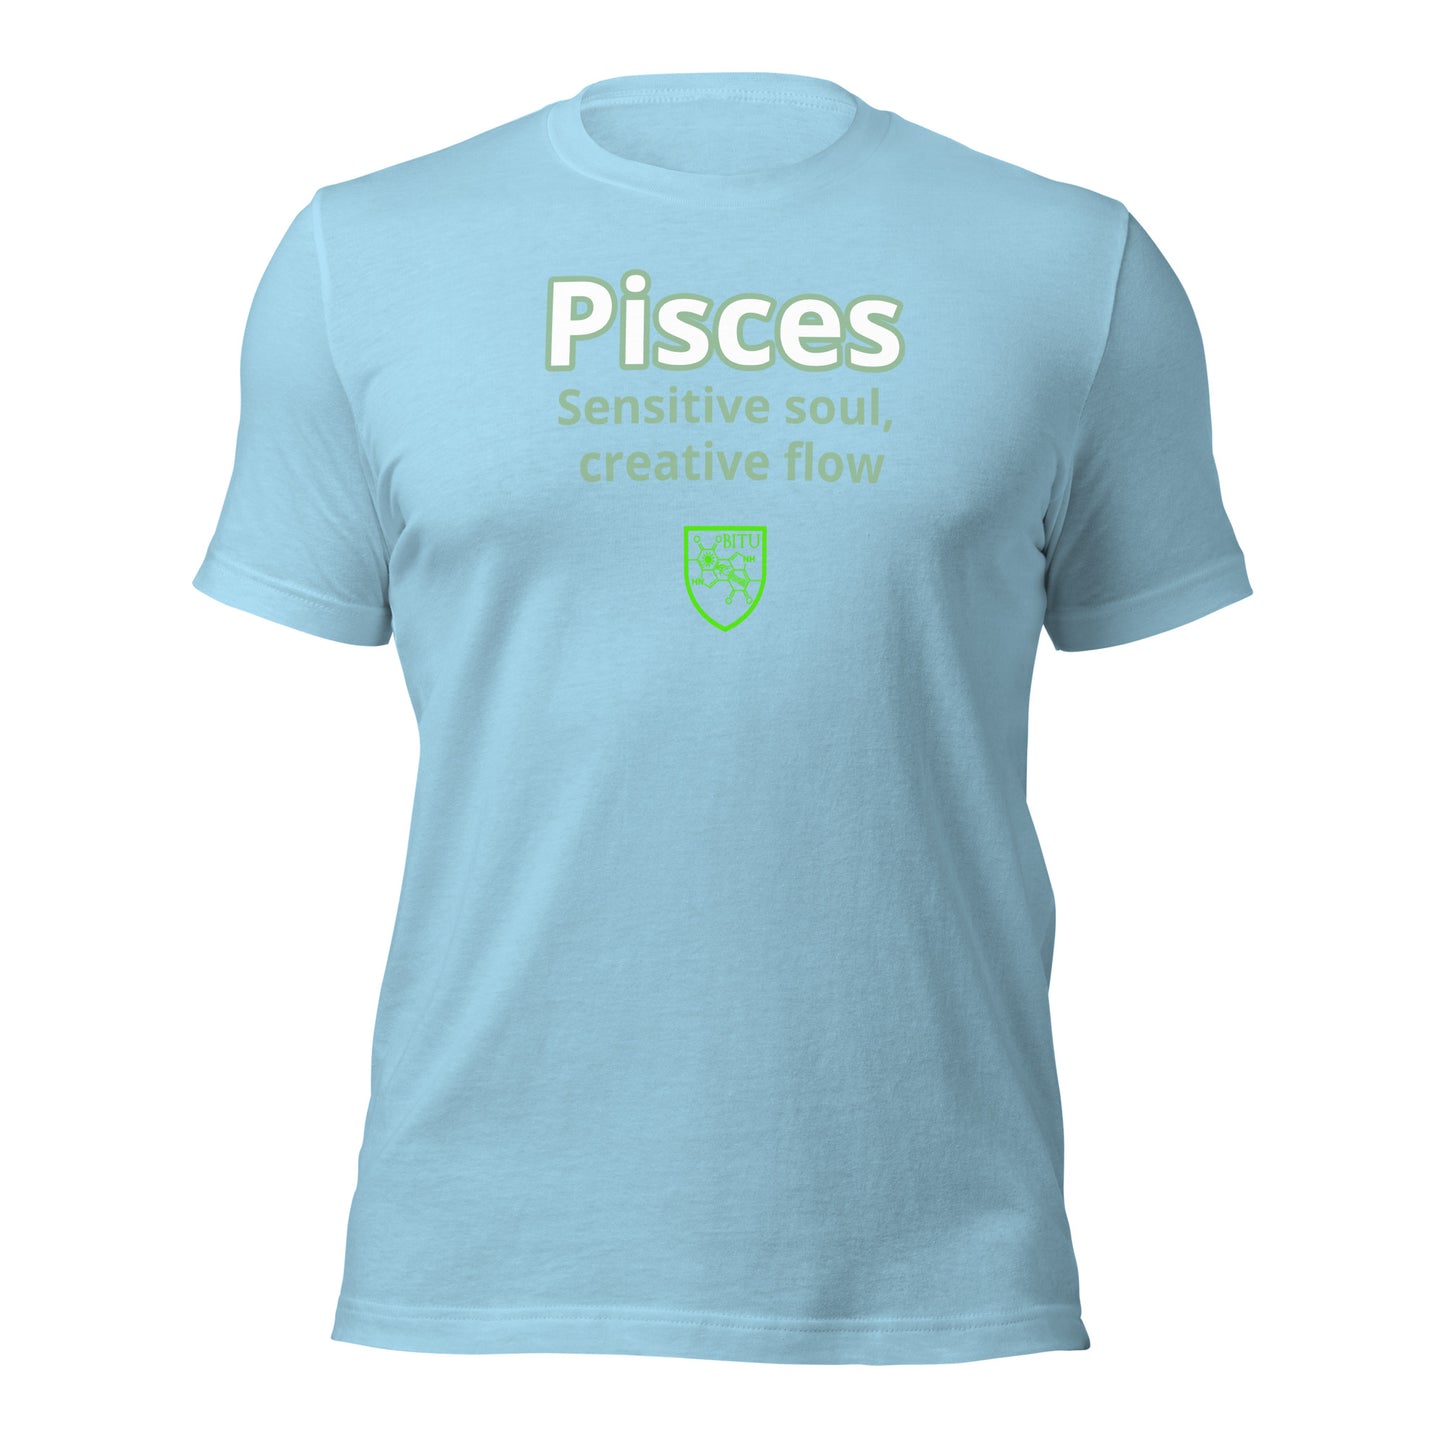 Pisces - Sensitive soul, creative flow